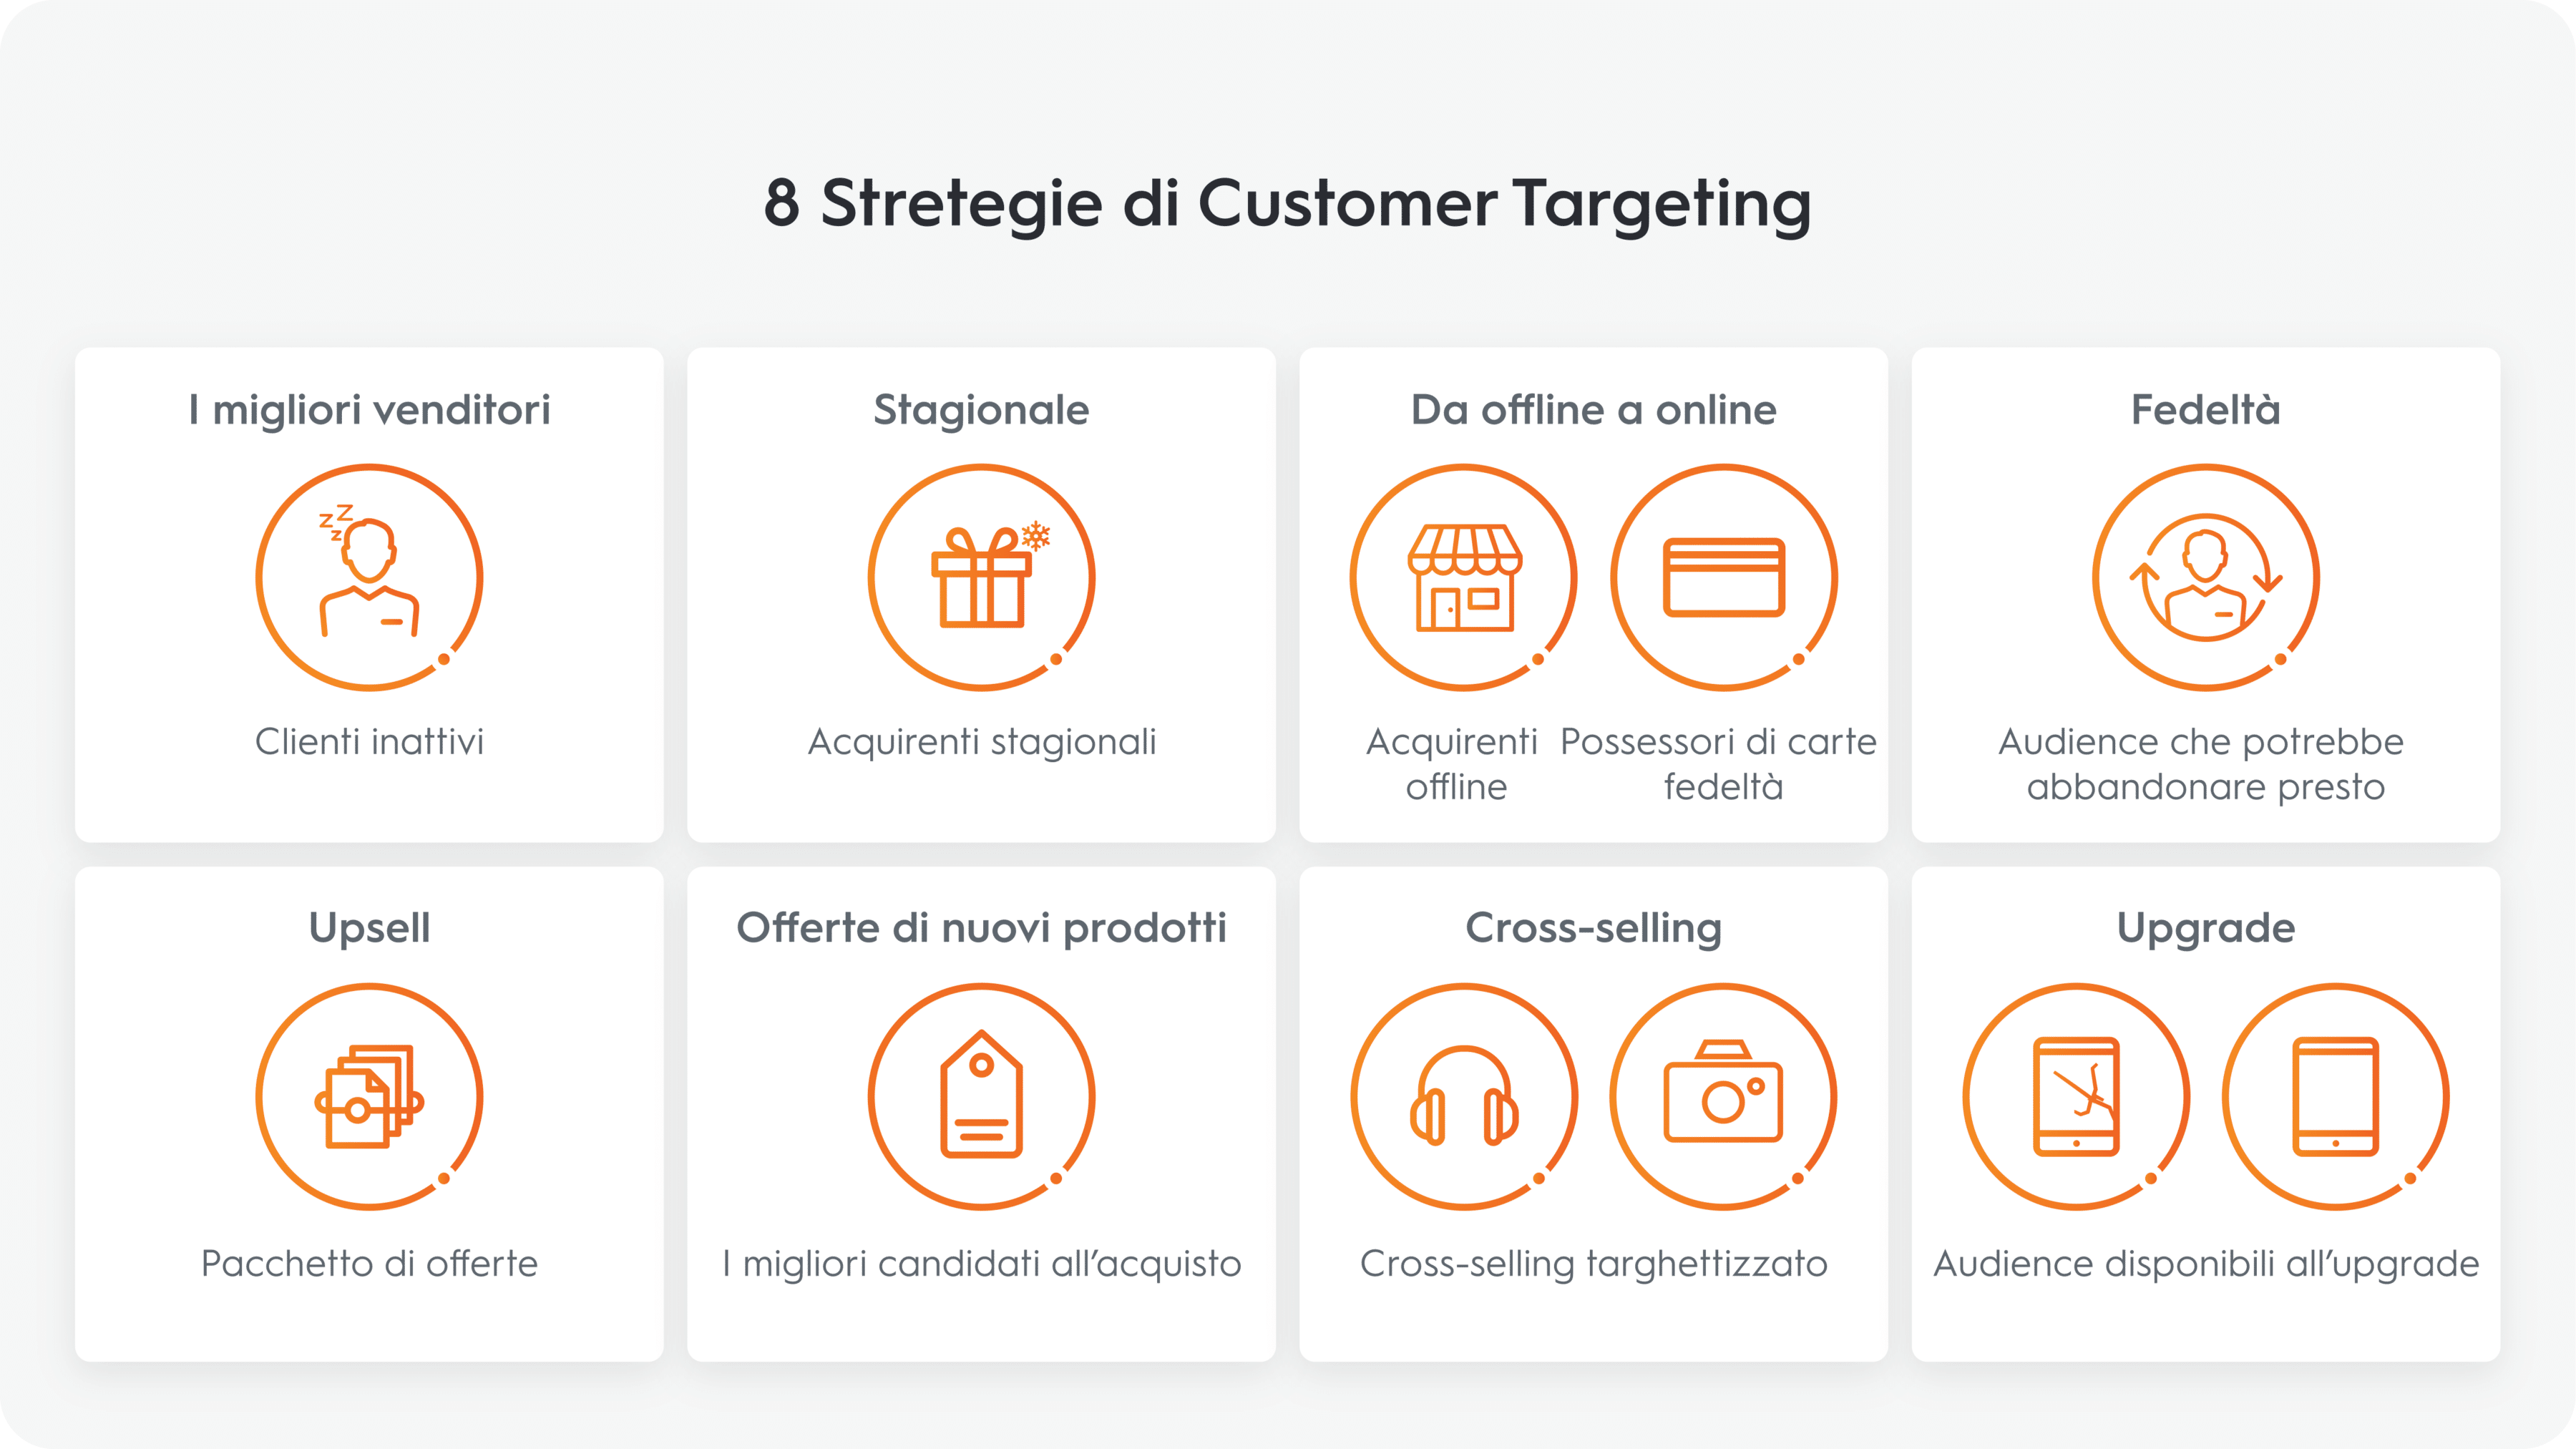 8 Stretegie di Customer Targeting